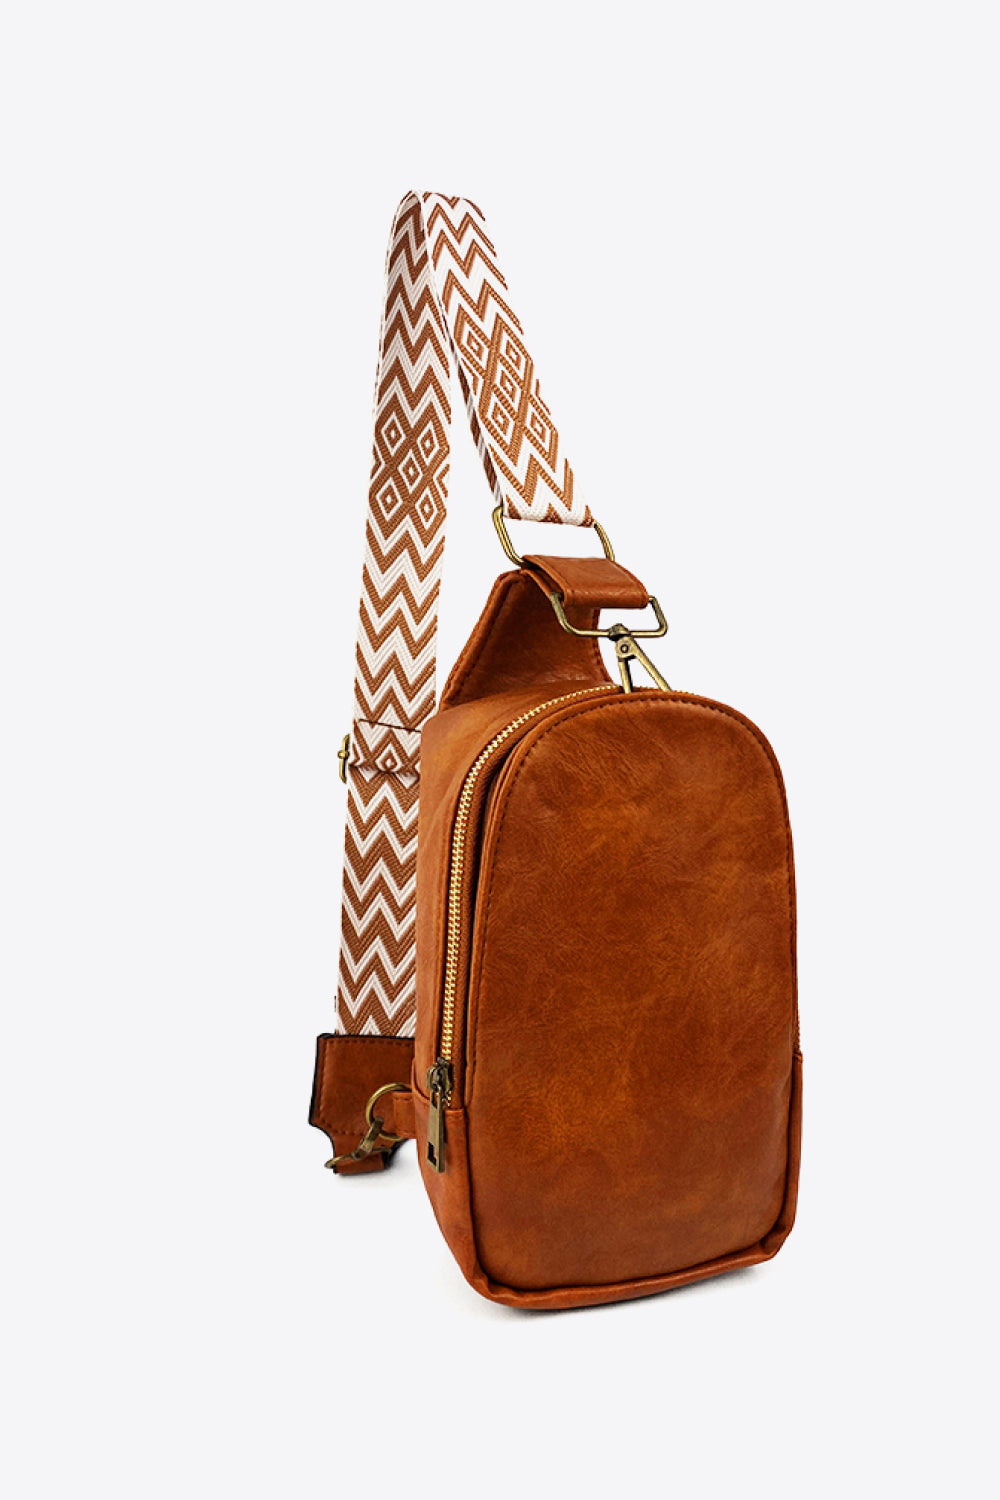 Aztec Adjustable Strap Leather Sling Bag